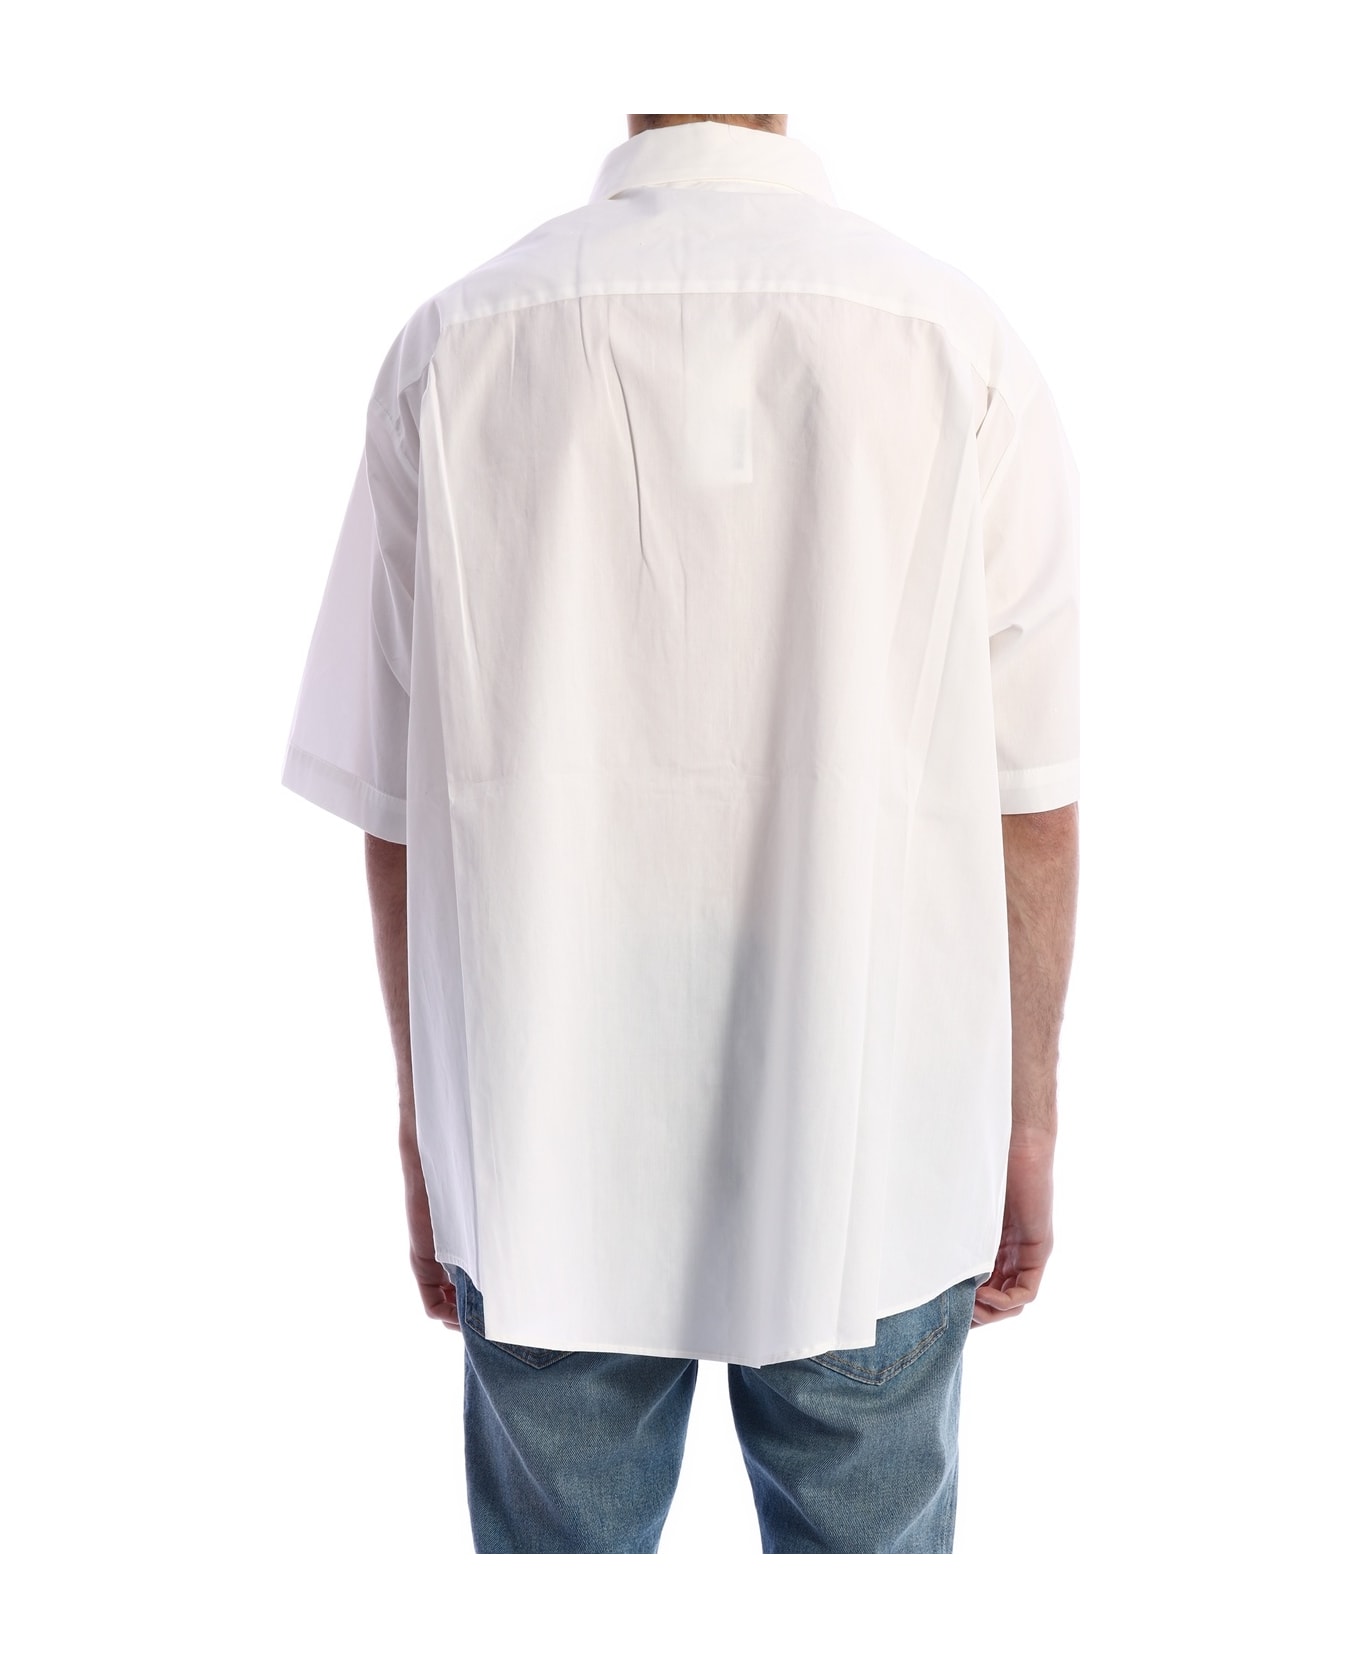 FourTwoFour on Fairfax Logo Shirt White - WHITE シャツ